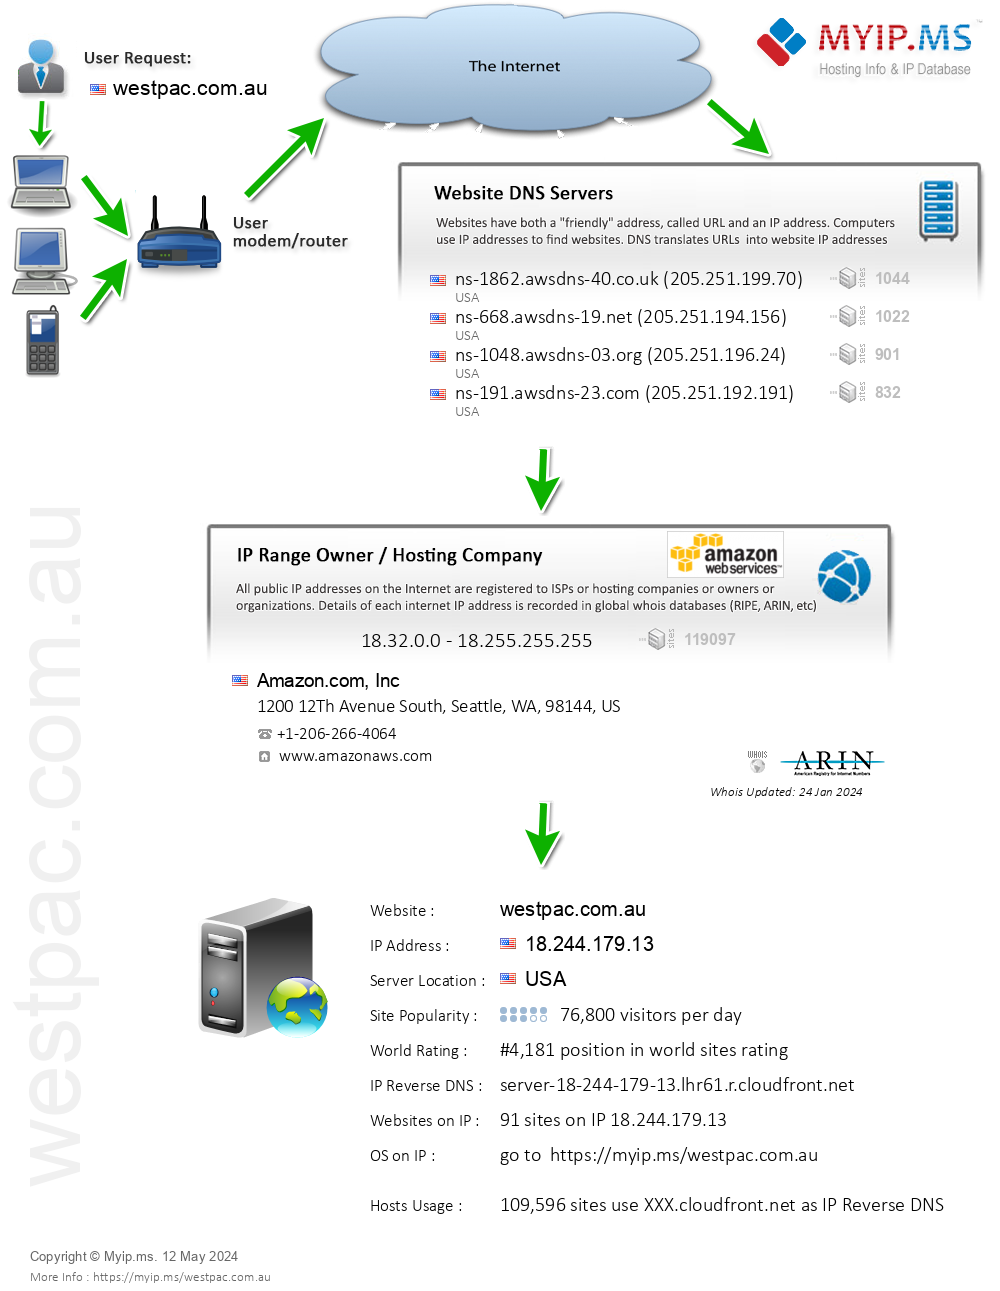 Westpac.com.au - Website Hosting Visual IP Diagram